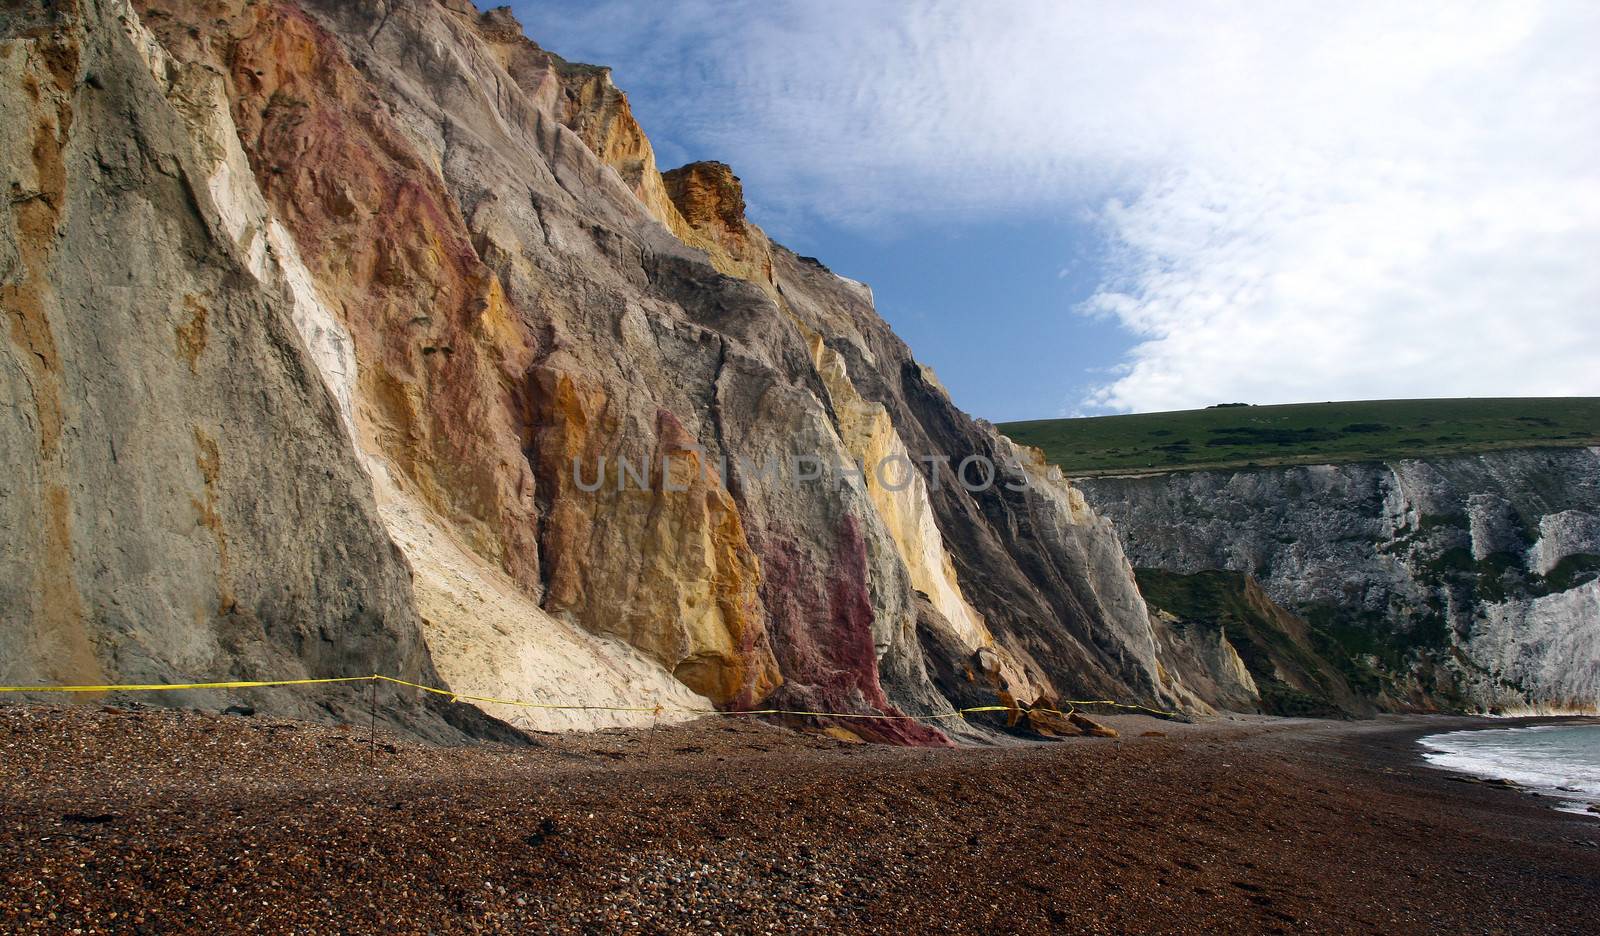 Isle of Wight rocks by olliemt